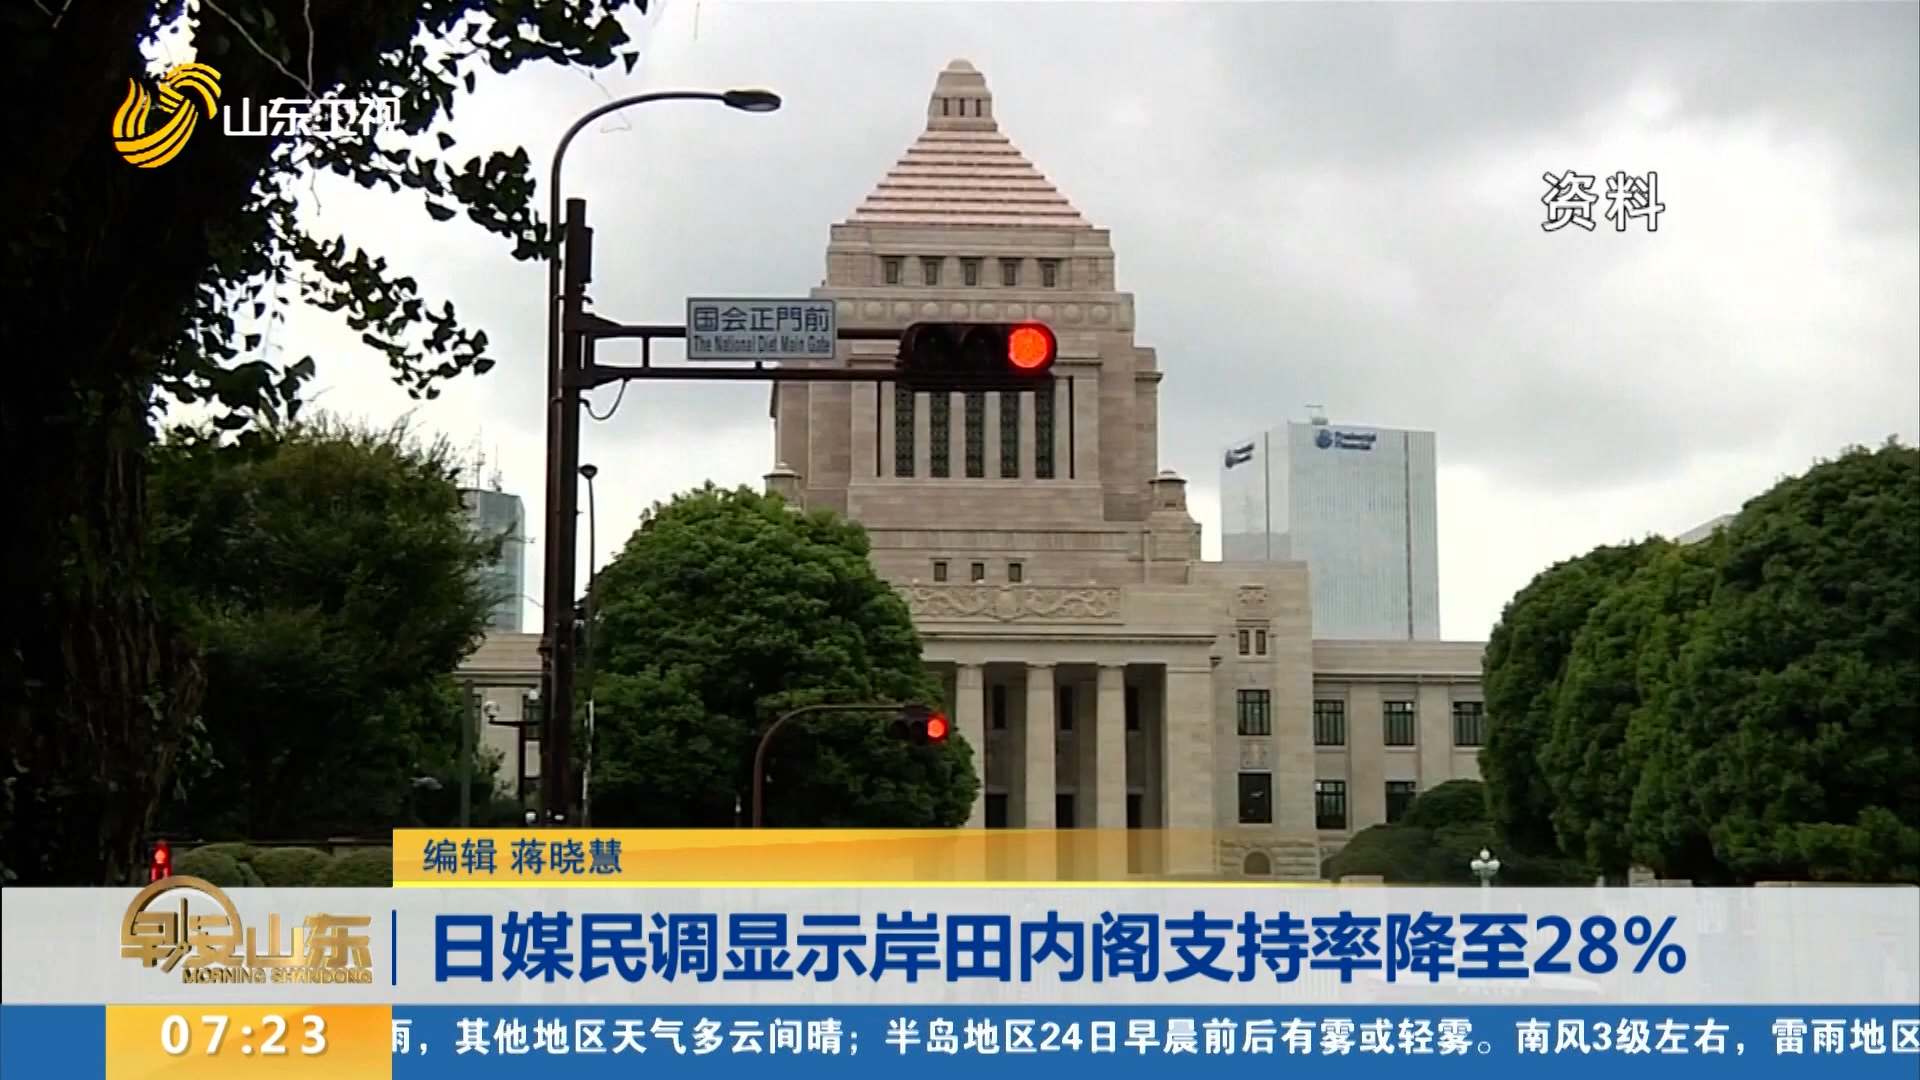 日媒民调显示岸田内阁支持率降至28%